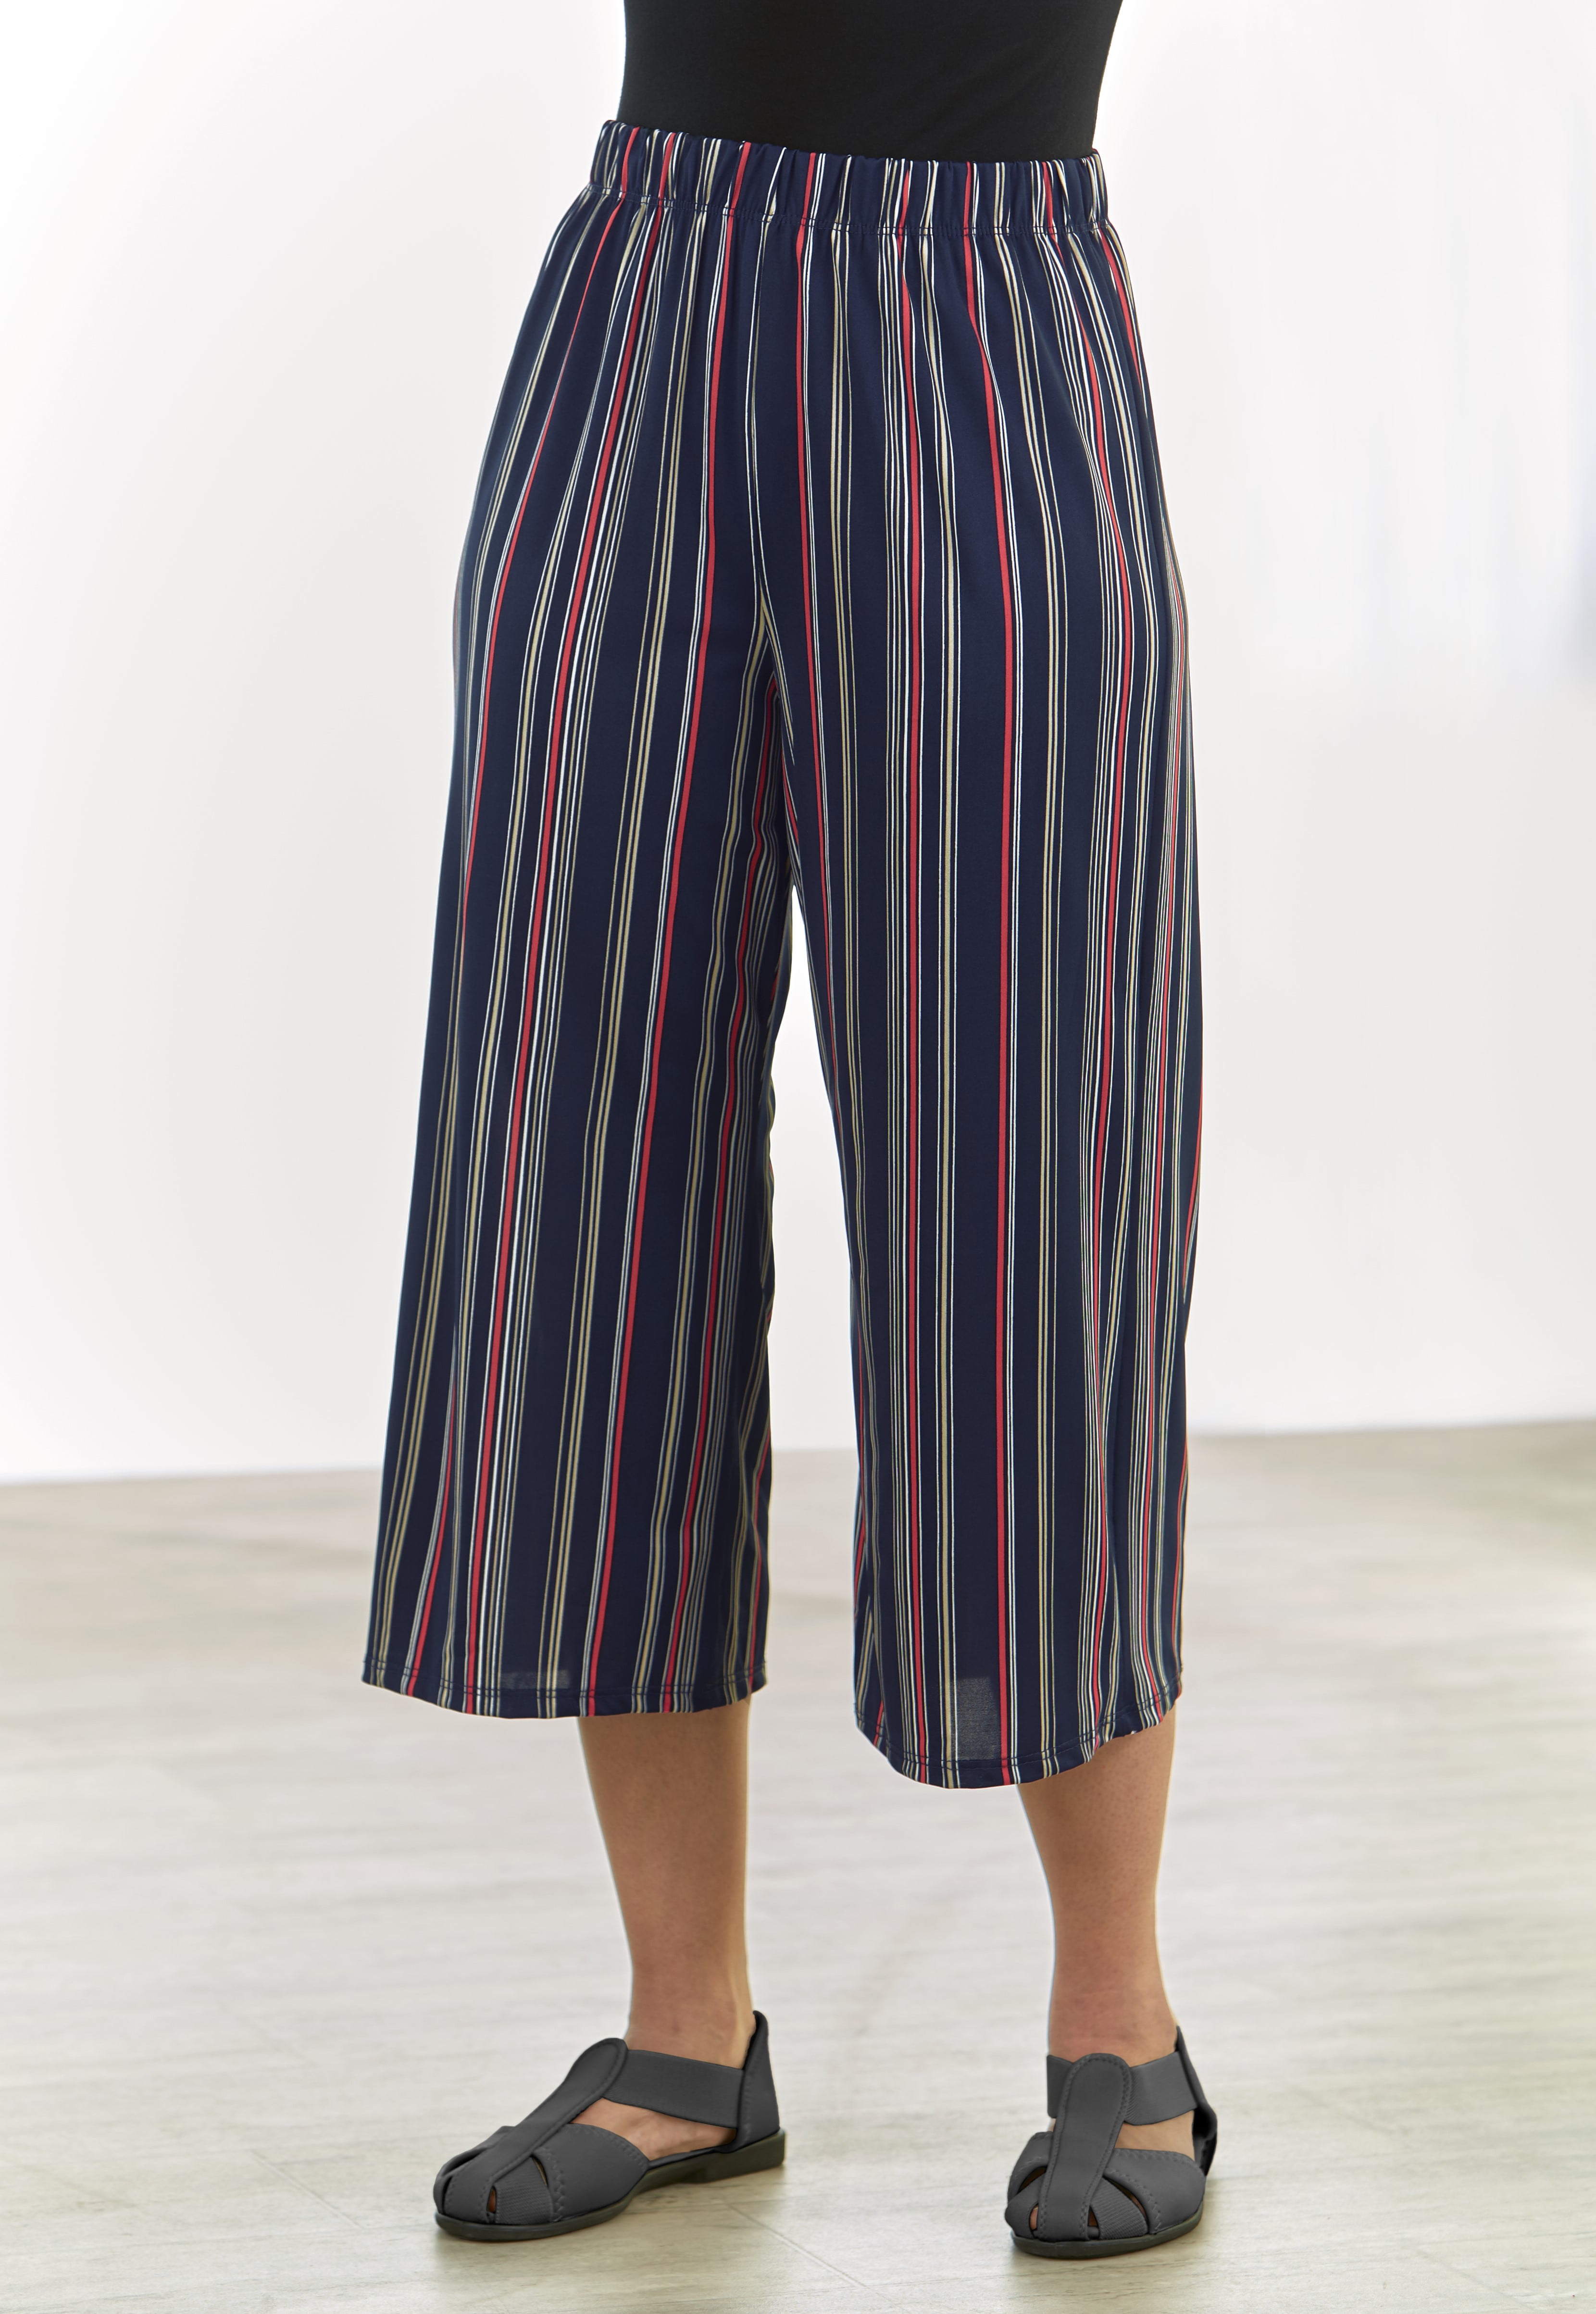 June Womens Chinos Summer Stripes Wide Leg Capris Harem Pants Plus Size